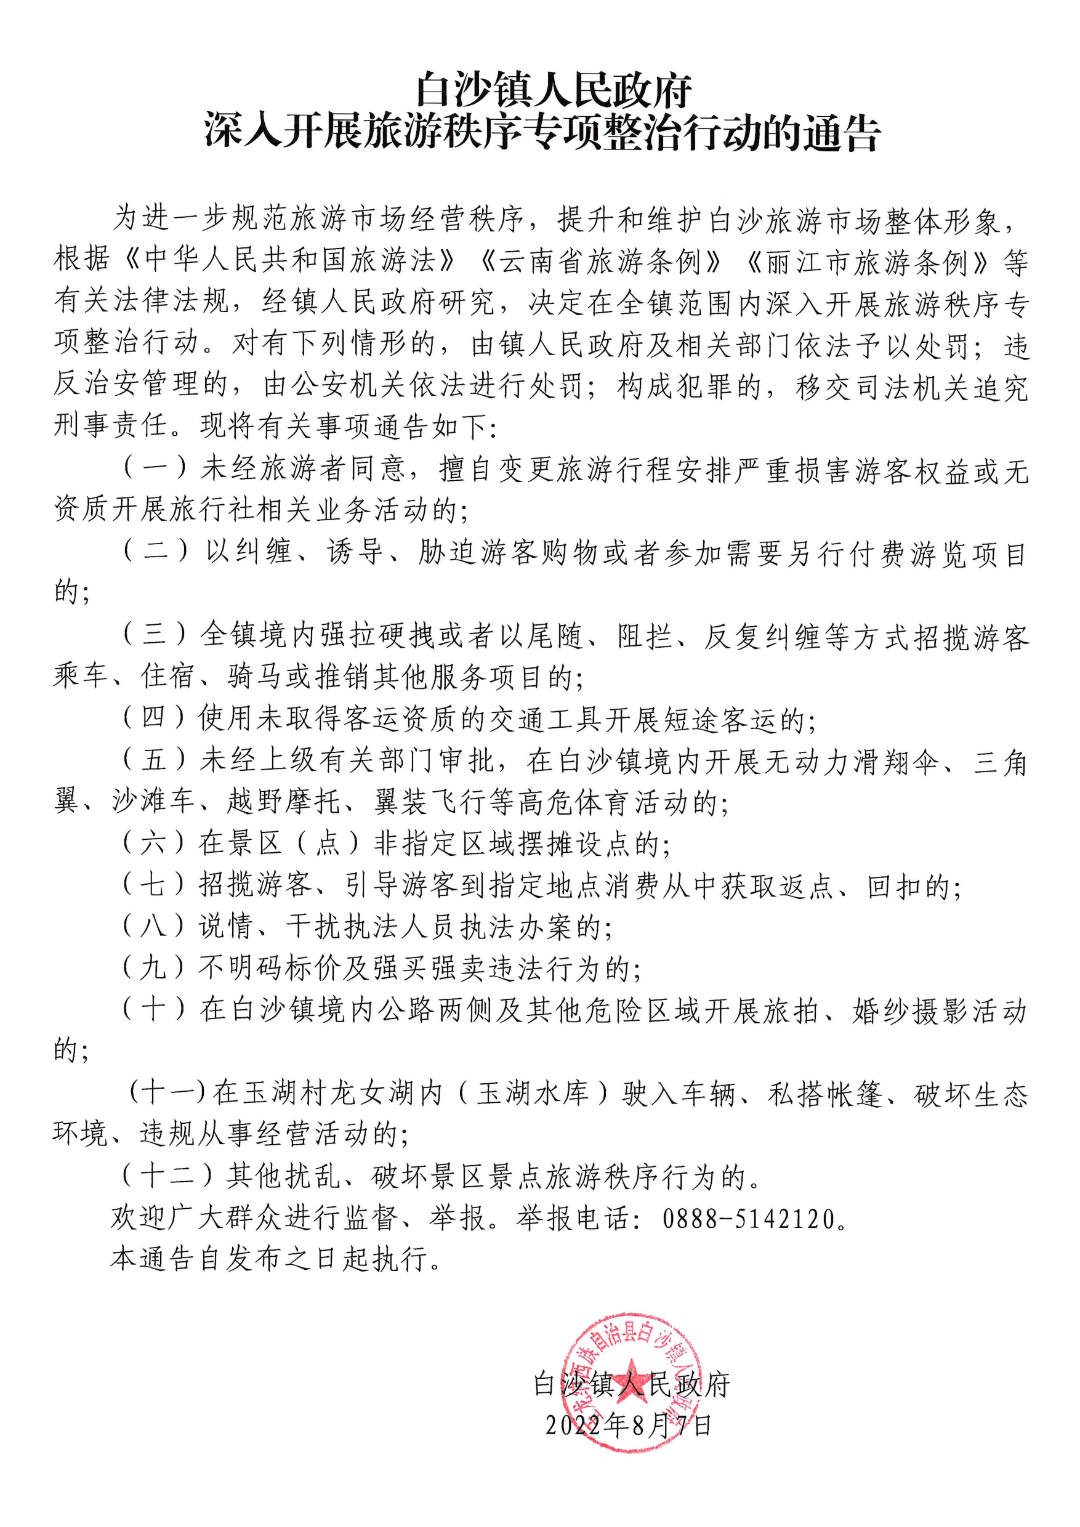 玉龙县白沙镇人民政府发布深入开展旅游秩序专项整治行动的通告